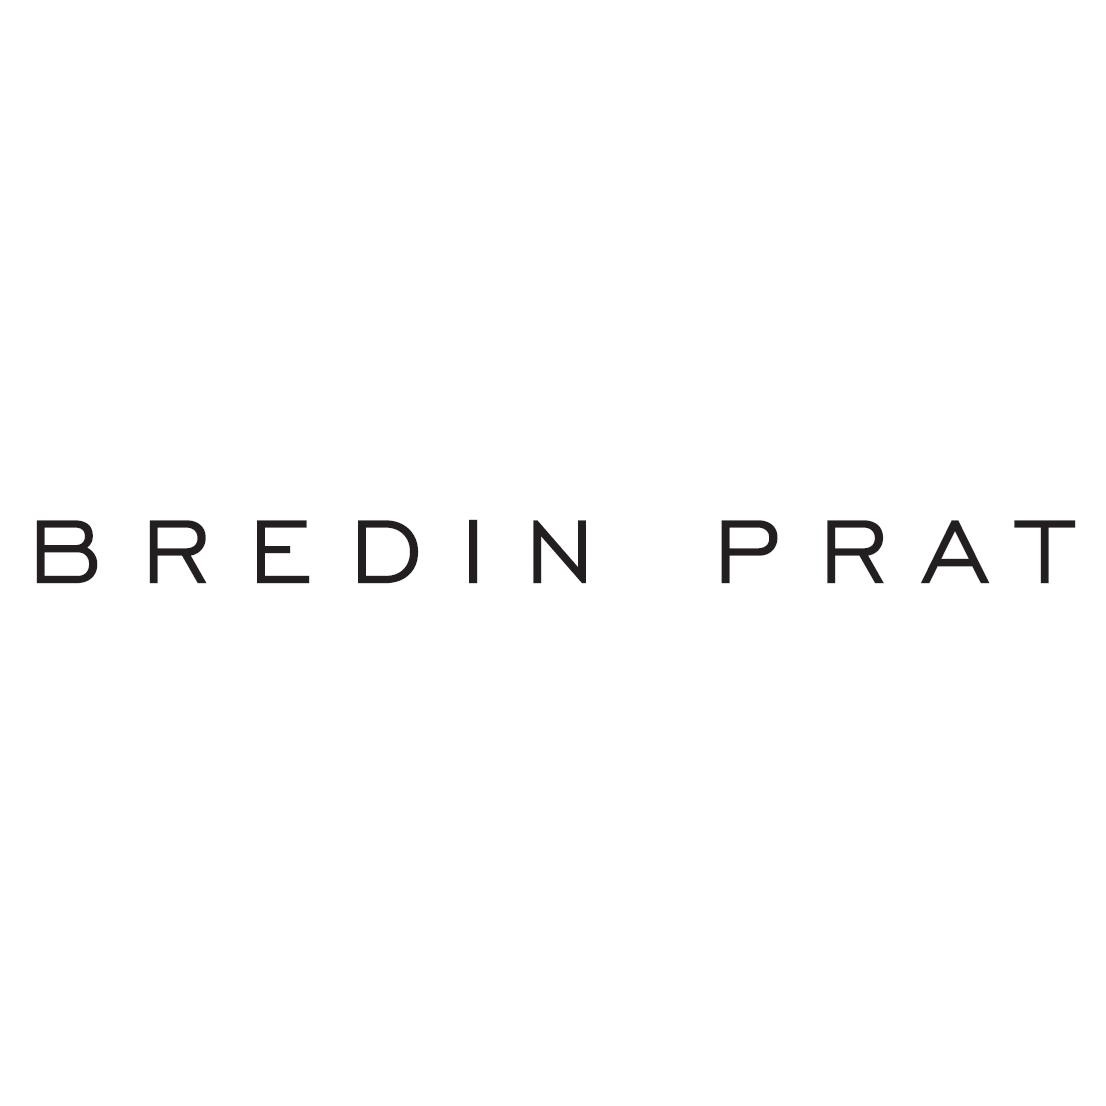 the Bredin Prat logo.